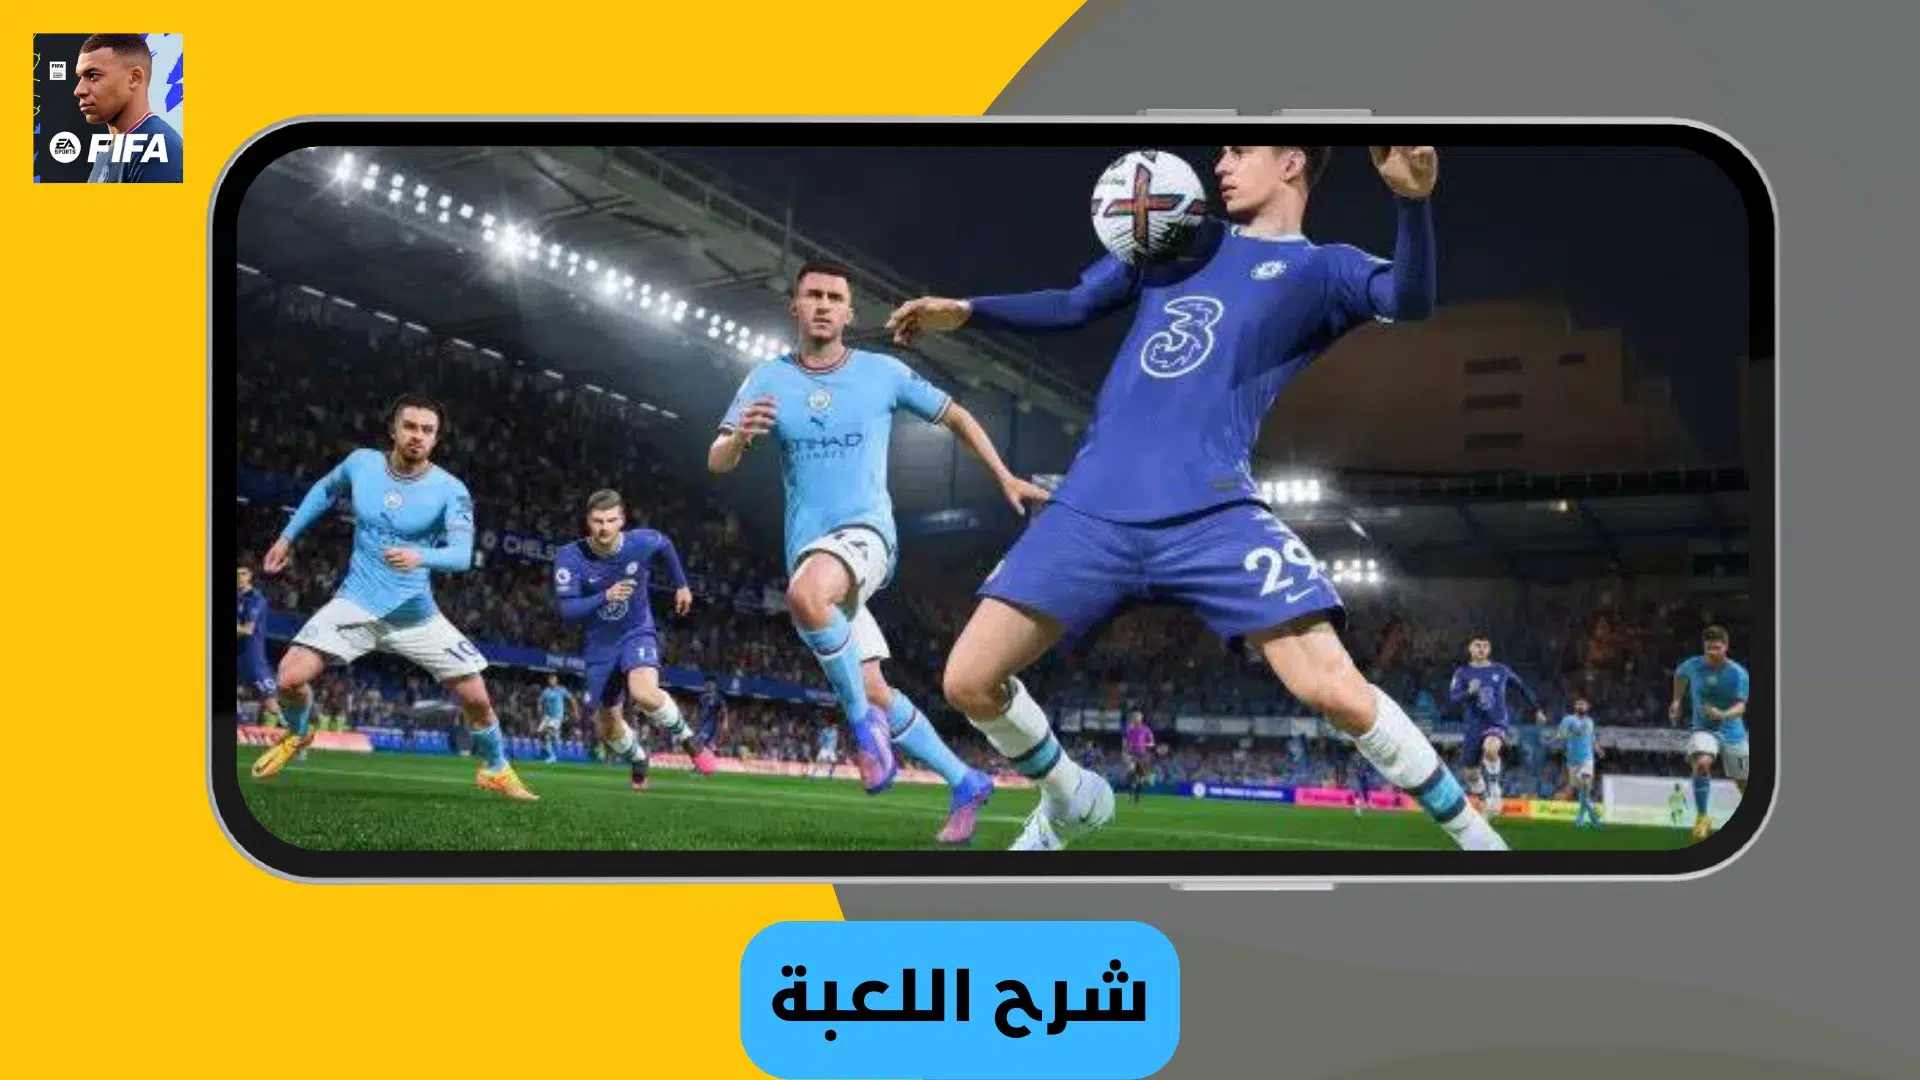 تحميل فيفا 2023 موبايل FIFA 23 Mobile Apk للاندرويد مجانا